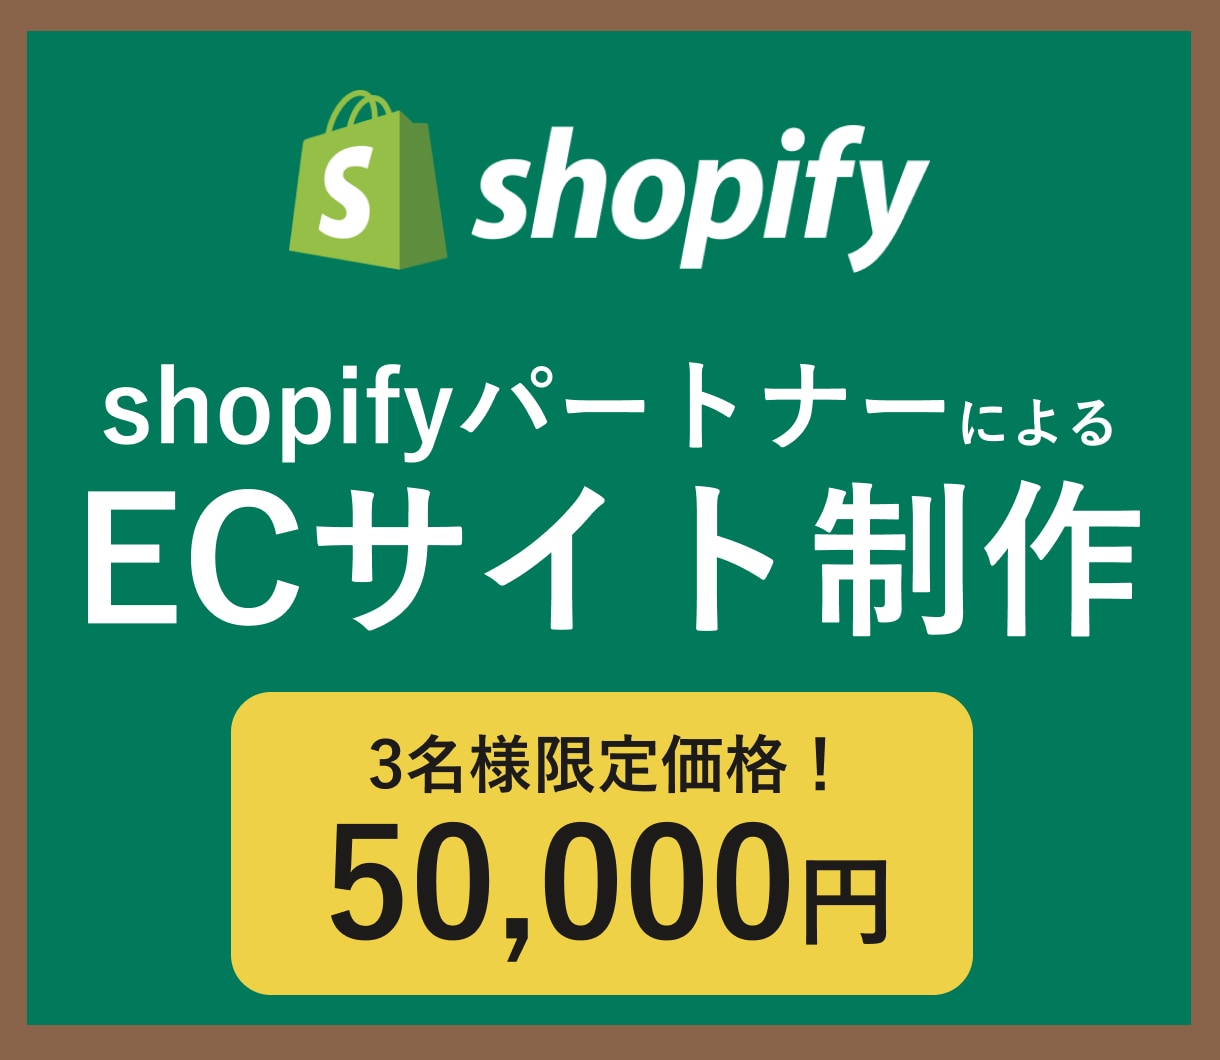 shopifyで本格ECサイト制作をサポートします ShopifyパートナーがECサイトの構築をサポートします！ イメージ1